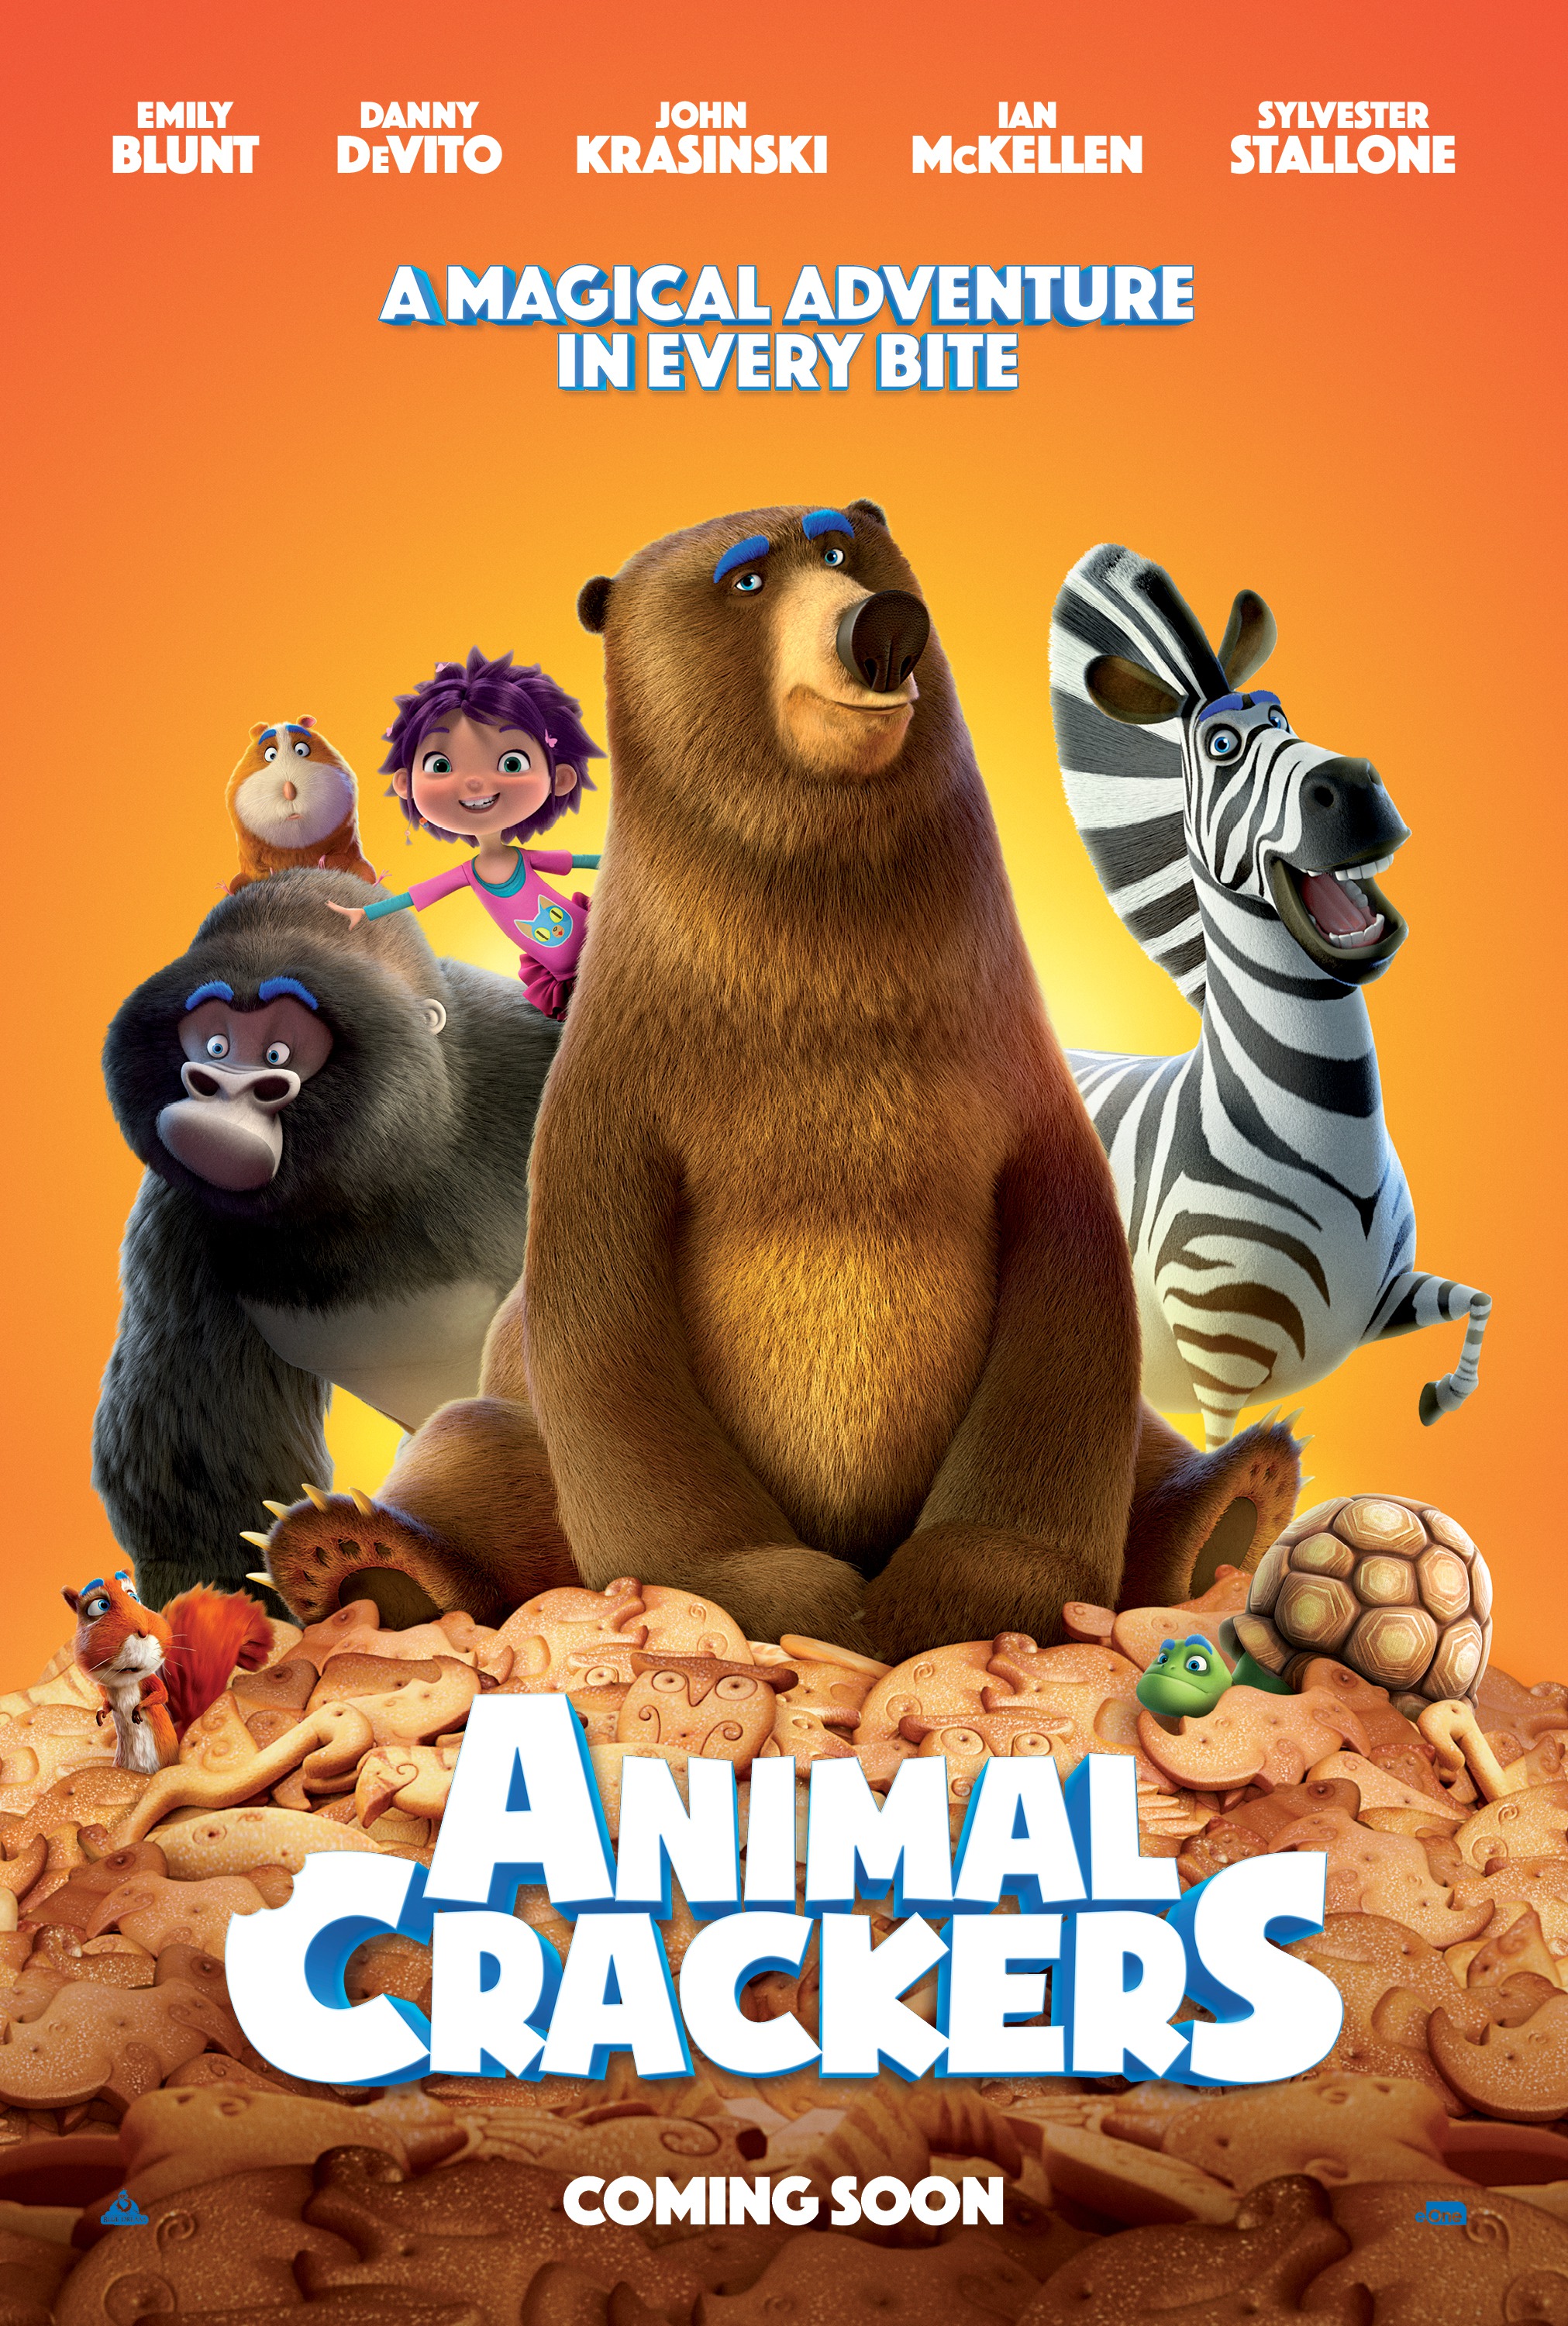 Animal Crackers (#4 of 13): Mega Sized Movie Poster Image - IMP Awards